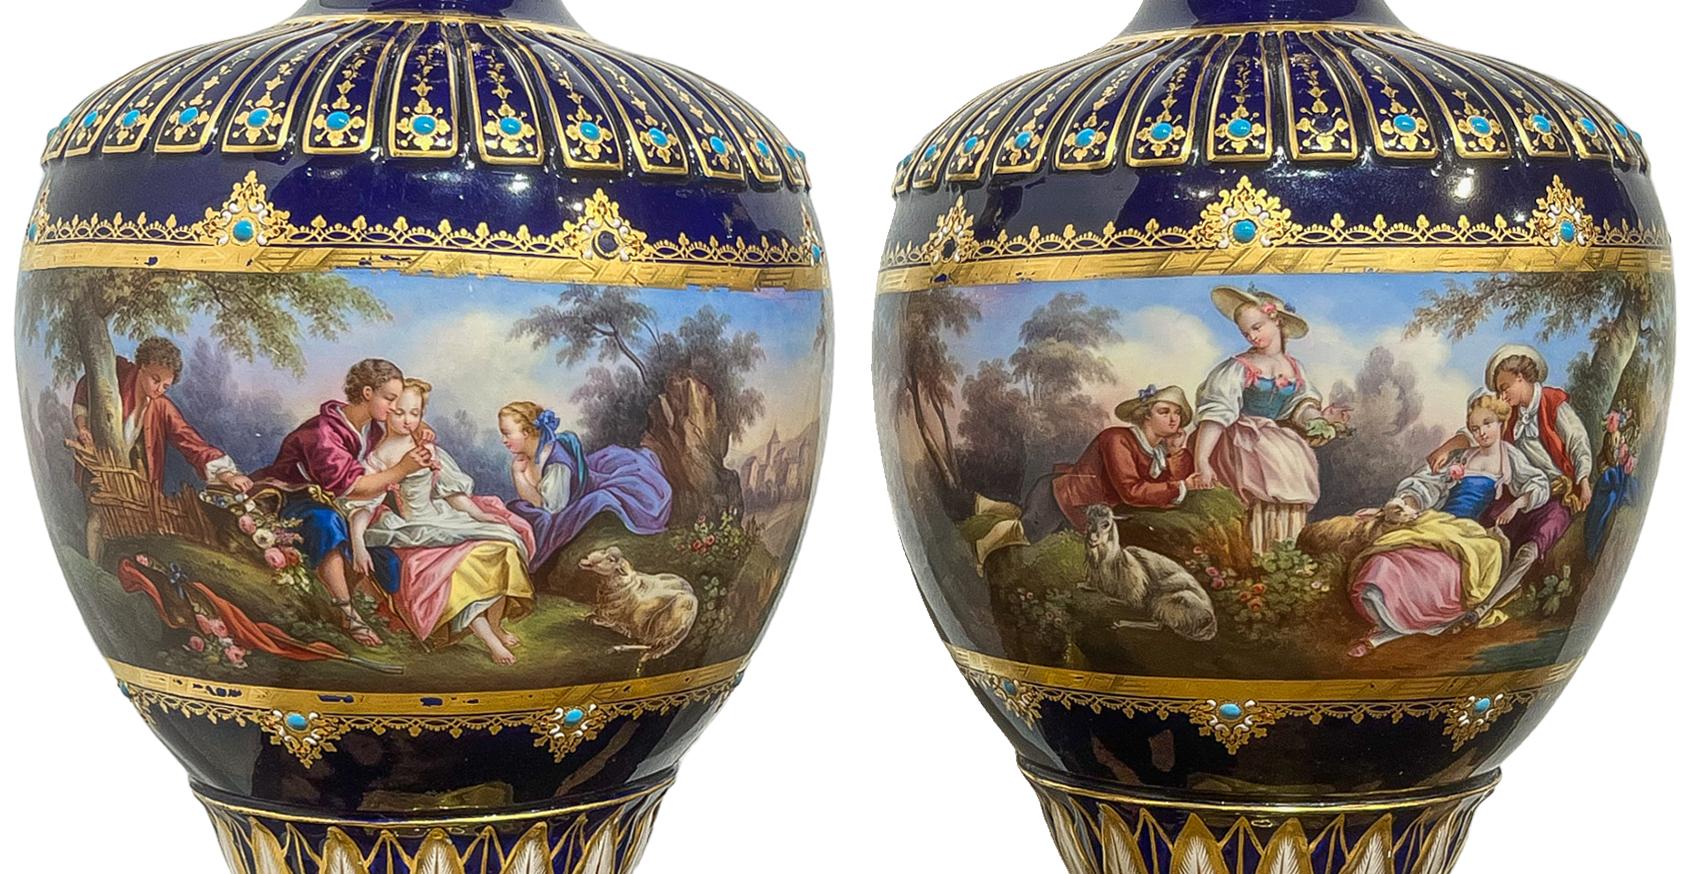 Blau serviert Paar Jewell Vasen mit vergoldeten Farbe und Türkis Verzierungen im gesamten. Unglaublich verschnörkelt mit goldfarbenen Details. Beide Vasen enthalten Genre  Szenen mit Schwerpunkt auf Figurengruppen, die sich in einem Wald mit üppigen